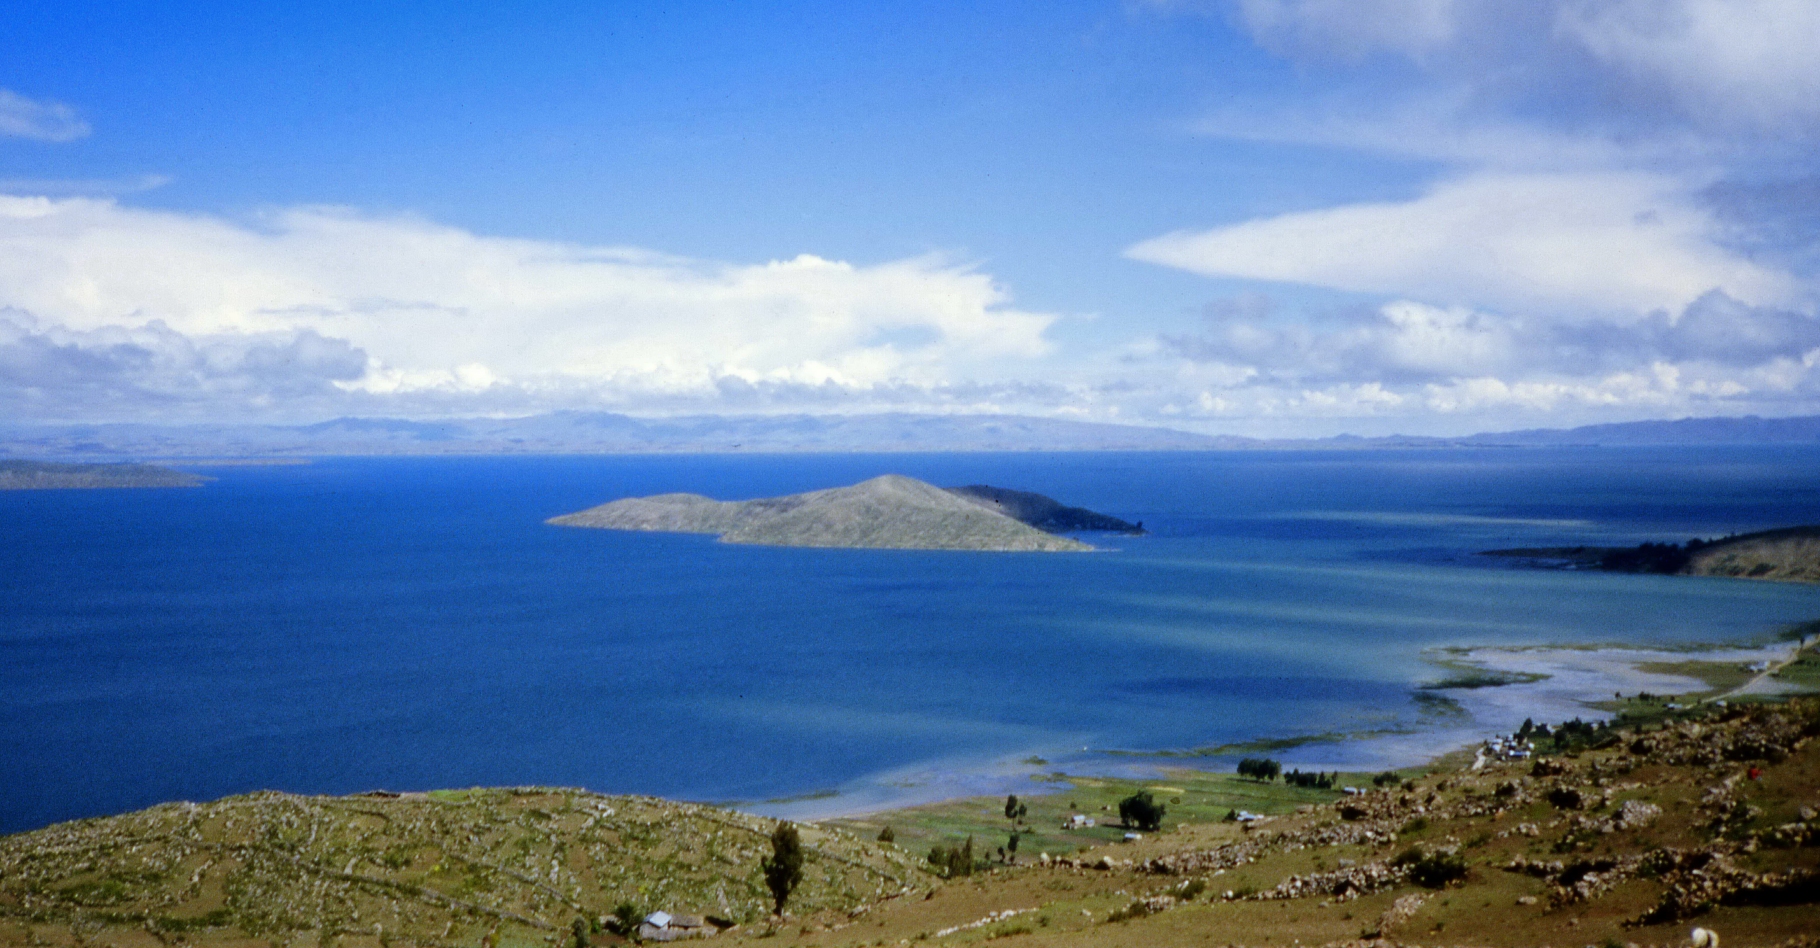 Avec ses 8.500 km2, le lac Titicaca, chevauchant la frontière entre le Pérou et la Bolivie, est l'un des plus grands d'Amérique du Sud. Situé en pleine montagne, à plus de 3.600 m d'altitude, il est peuplé depuis les Incas. Aujourd'hui, plusieurs millions de personnes vivent sur son bassin versant et les eaux qui s'y déversent sont loin d'être toutes traitées. © Viault, GNU Free Documention License